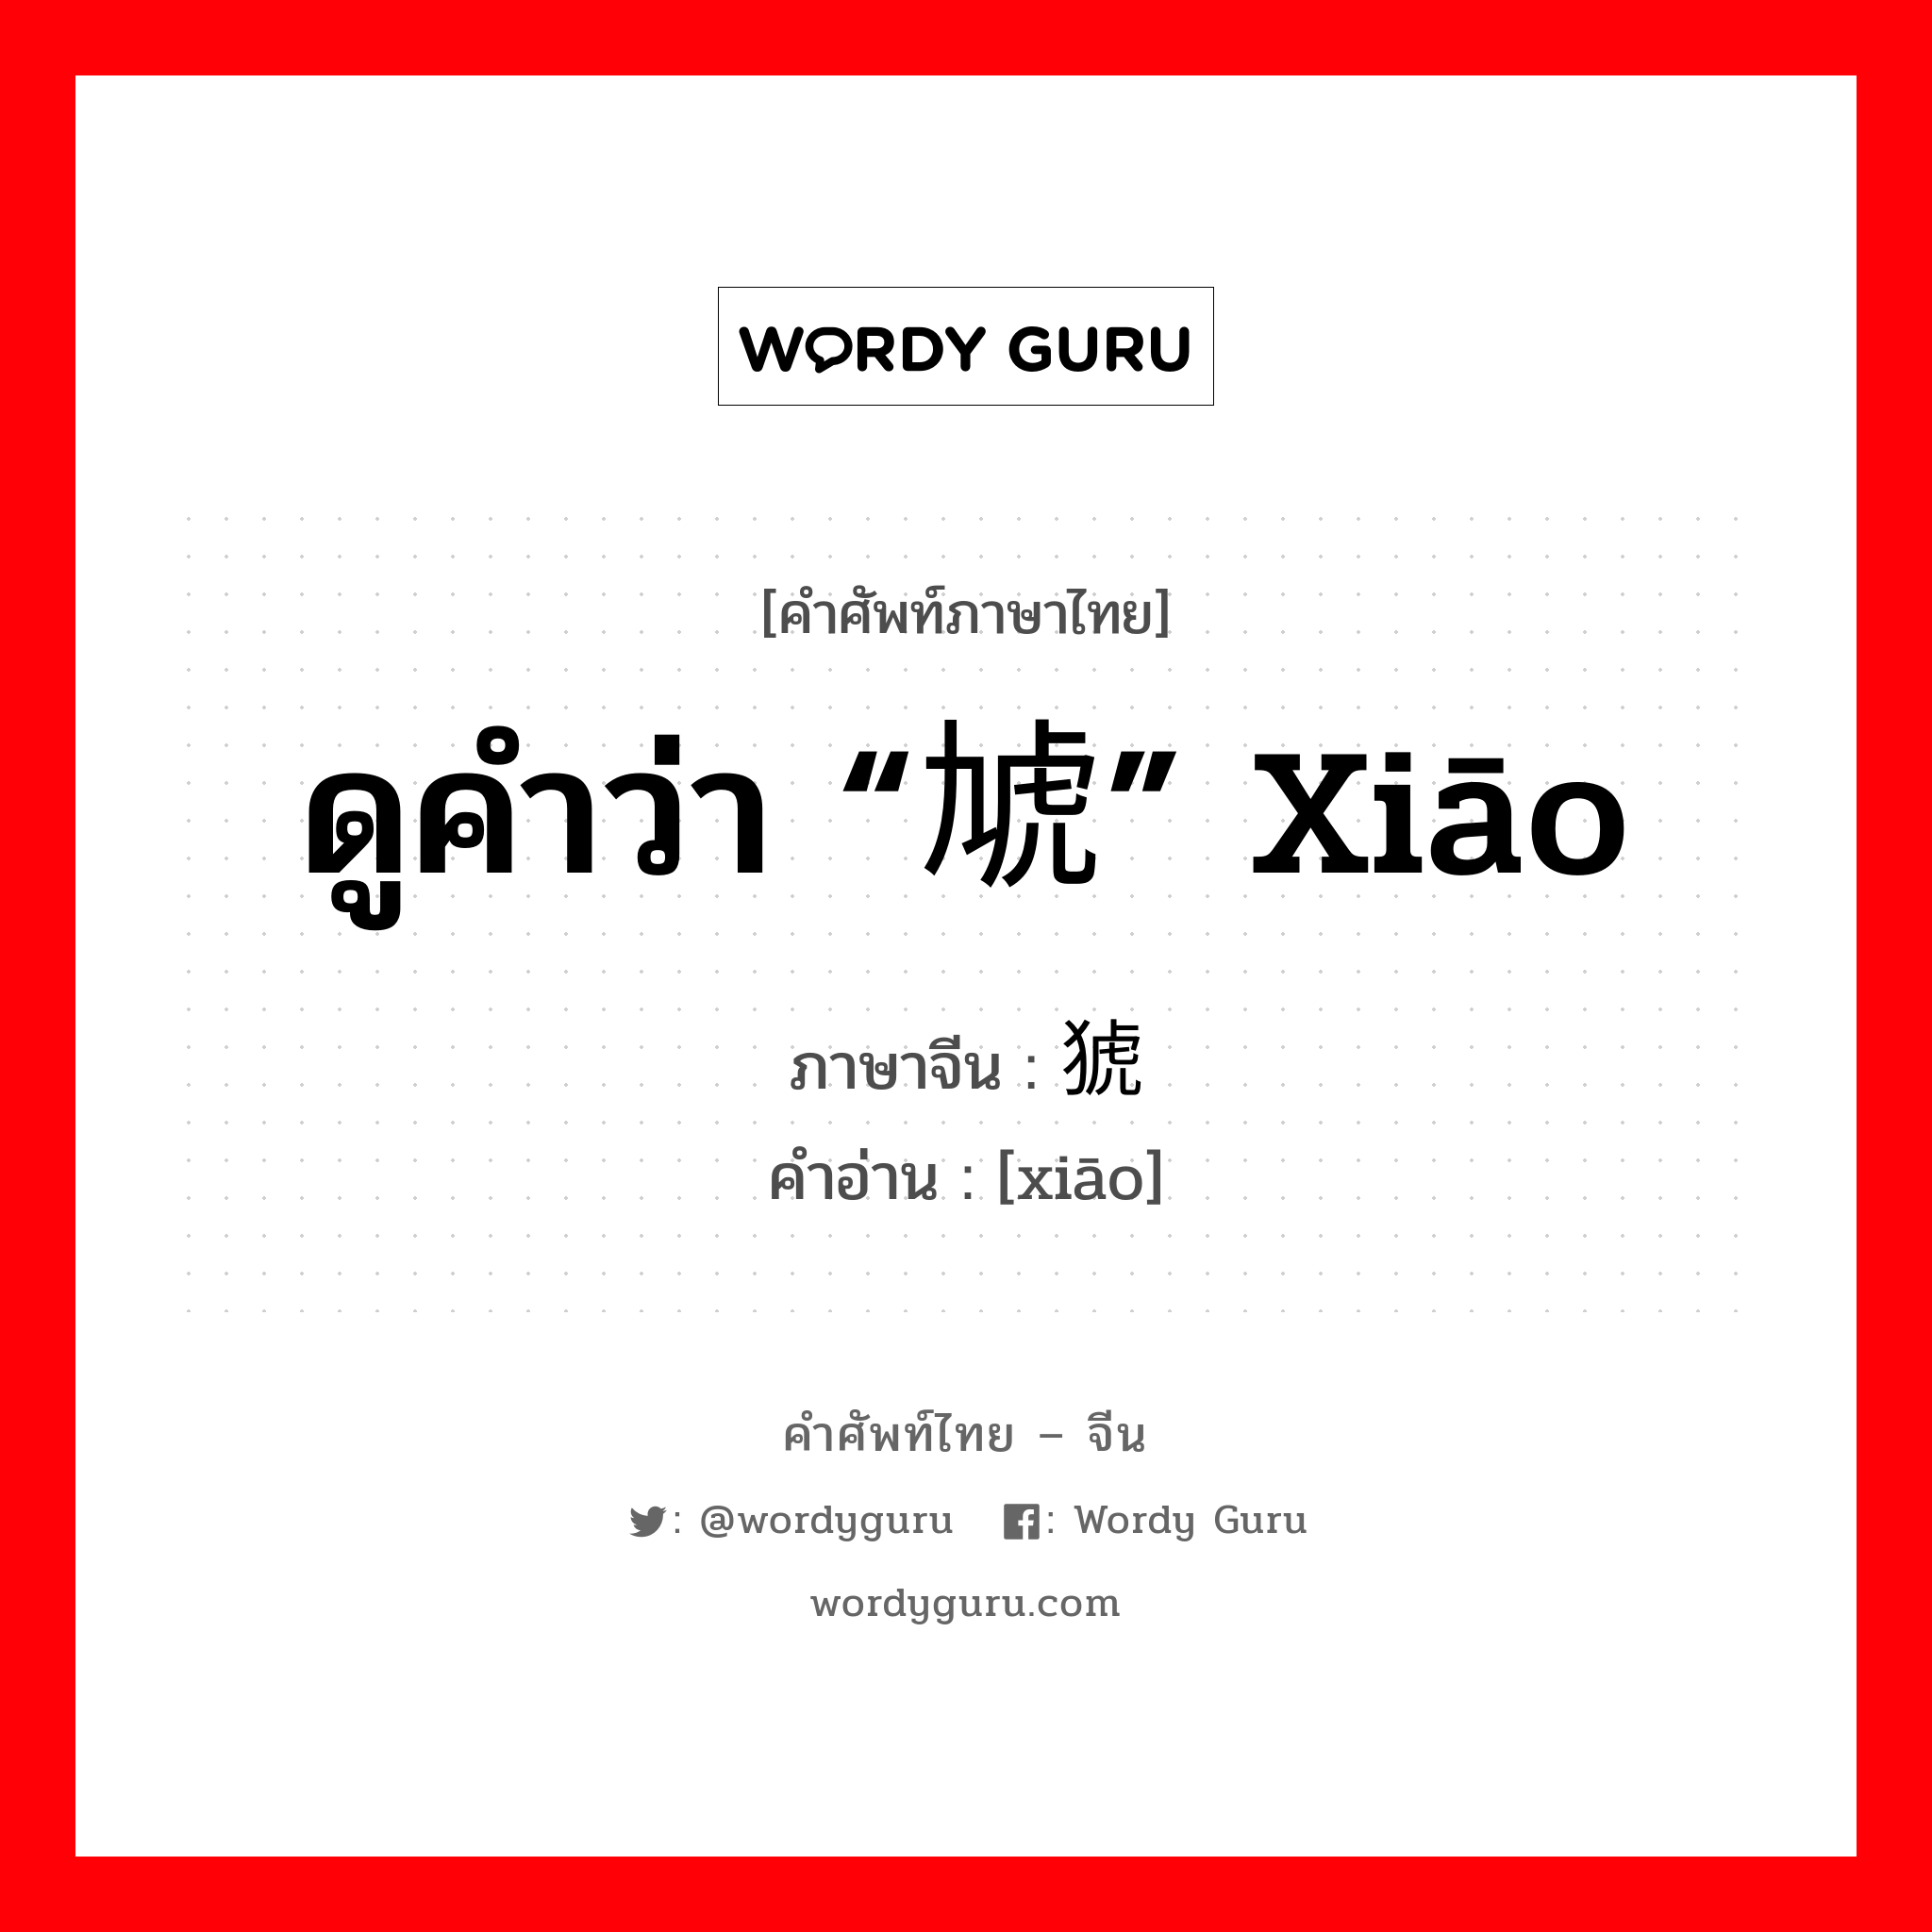 ดูคำว่า “虓” xiāo ภาษาจีนคืออะไร, คำศัพท์ภาษาไทย - จีน ดูคำว่า “虓” xiāo ภาษาจีน 猇 คำอ่าน [xiāo]